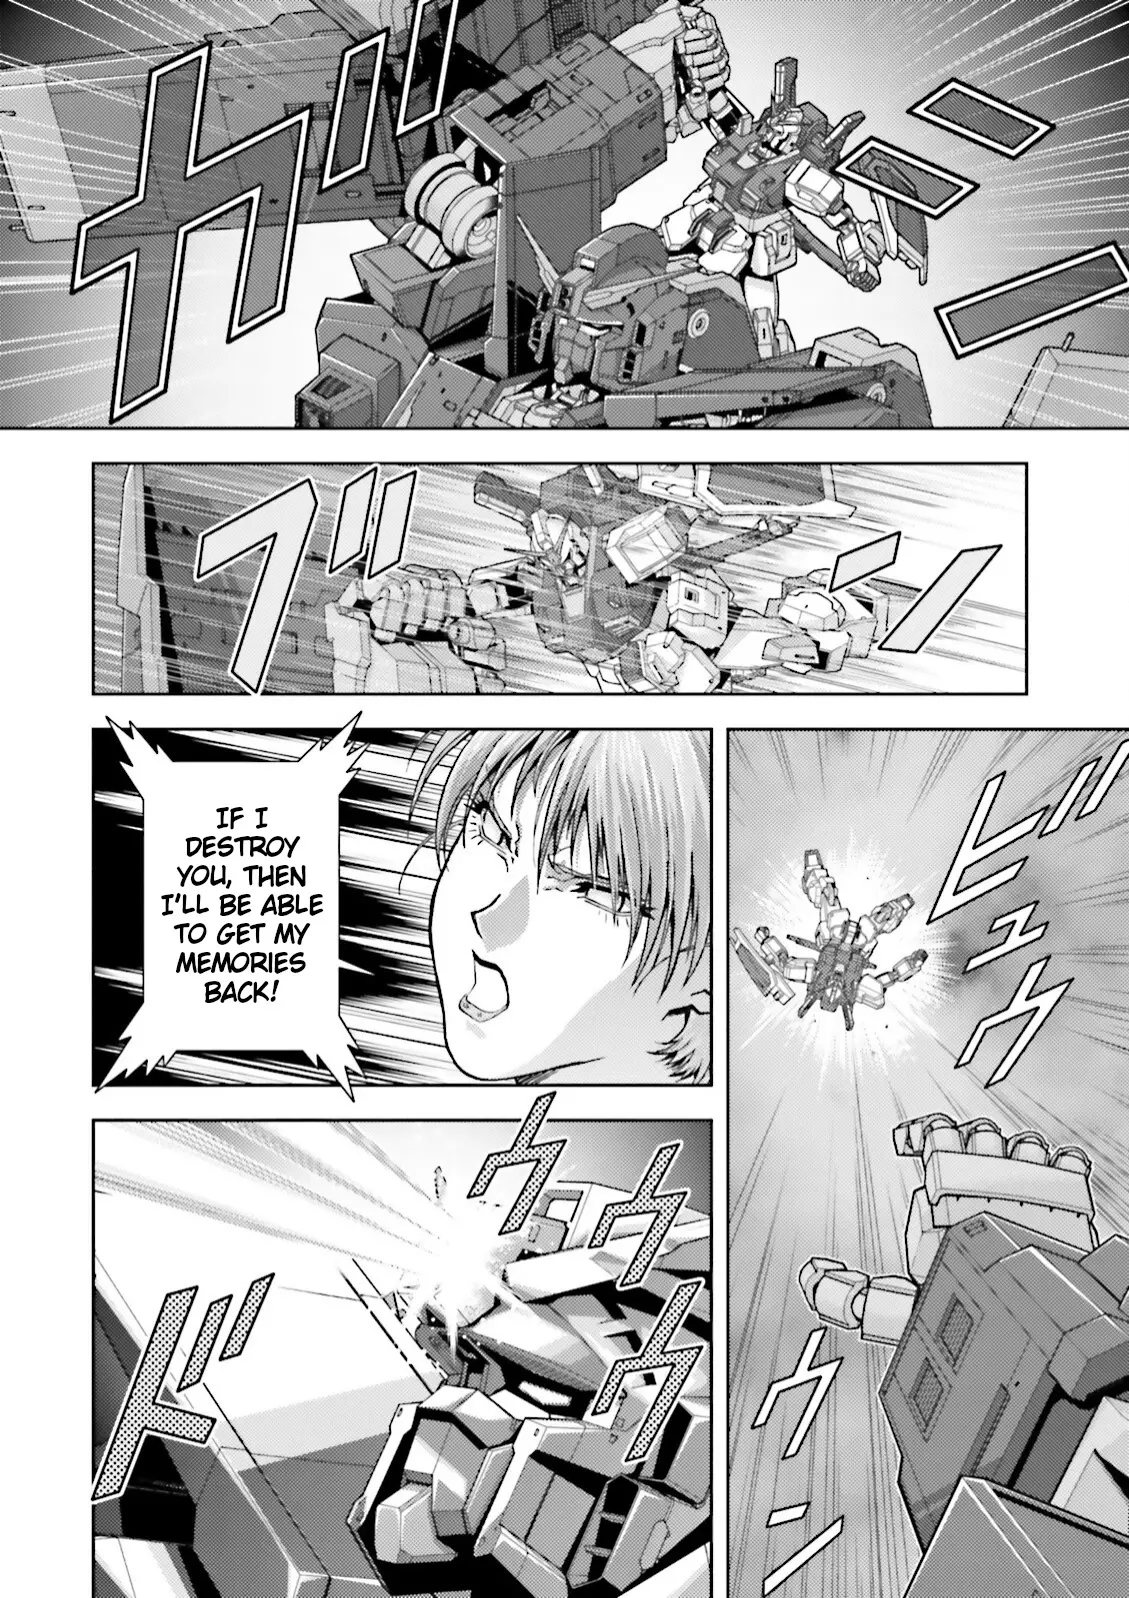 Mobile Suit Zeta Gundam - Define - 40 page 8-22d8a123